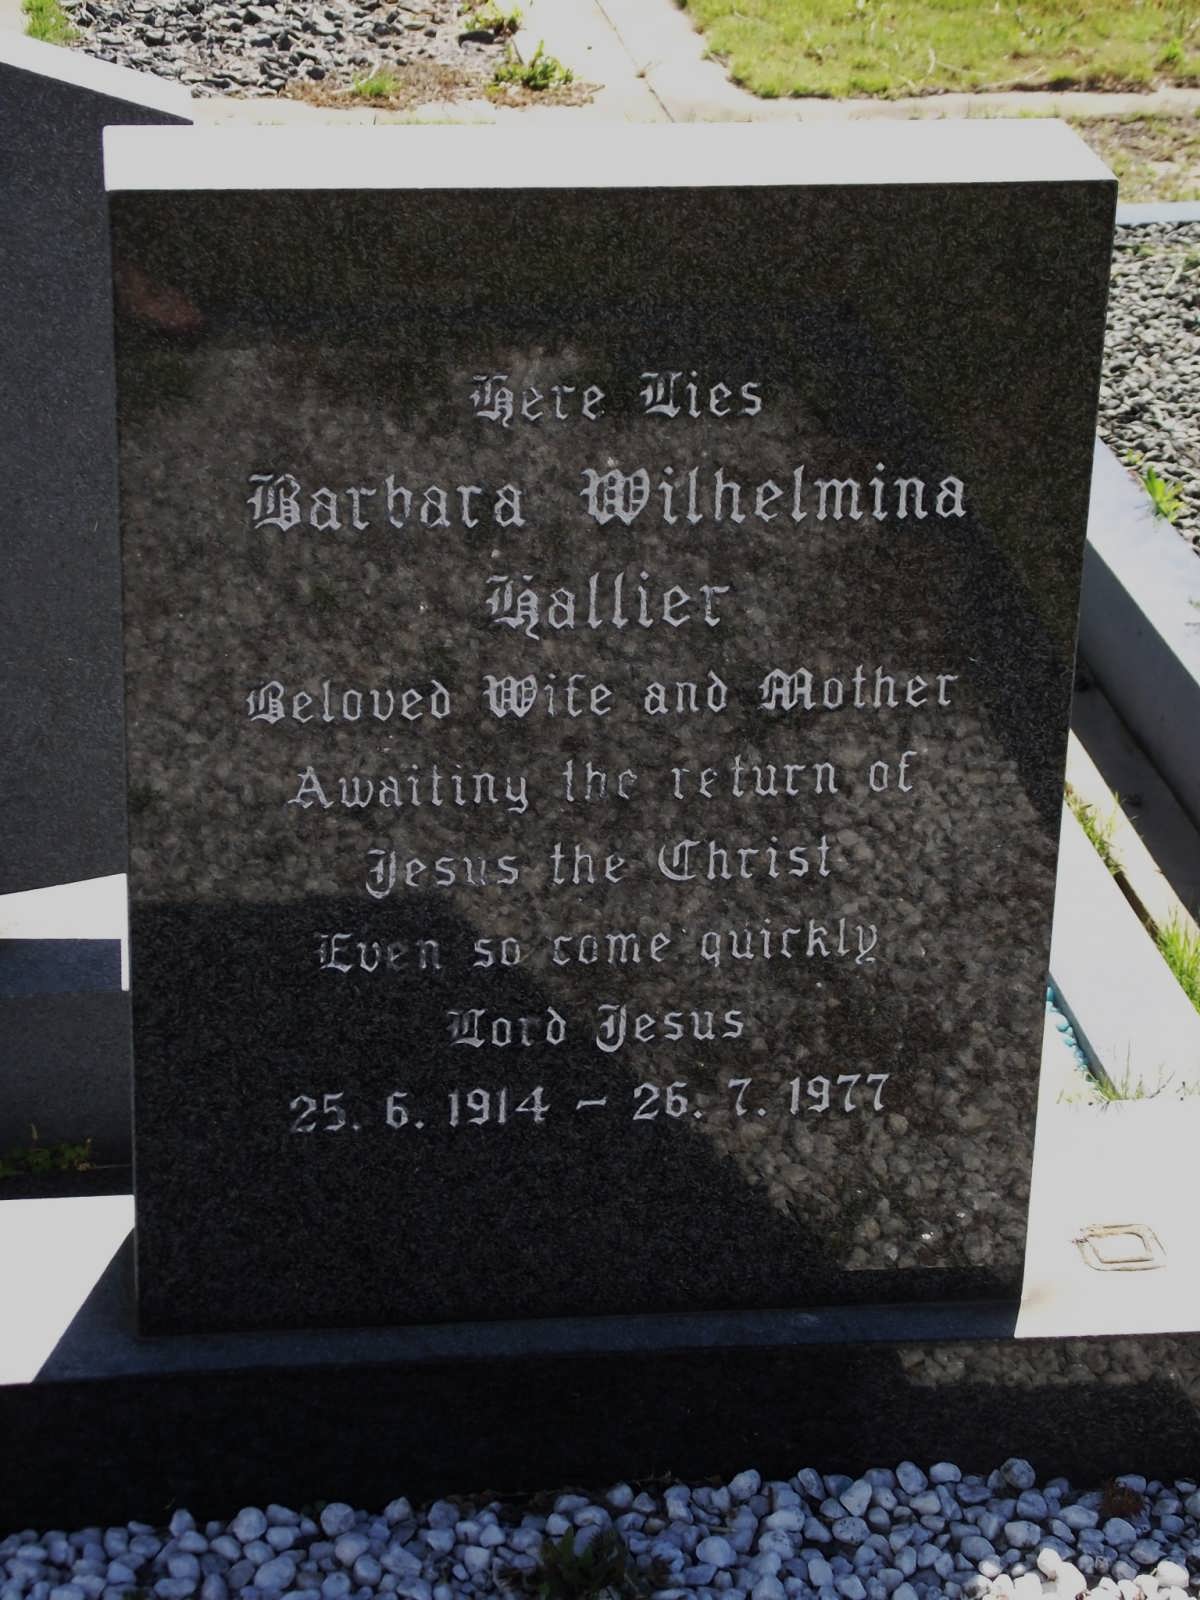 HALLIER Barbara Wilhelmina 1914-1977